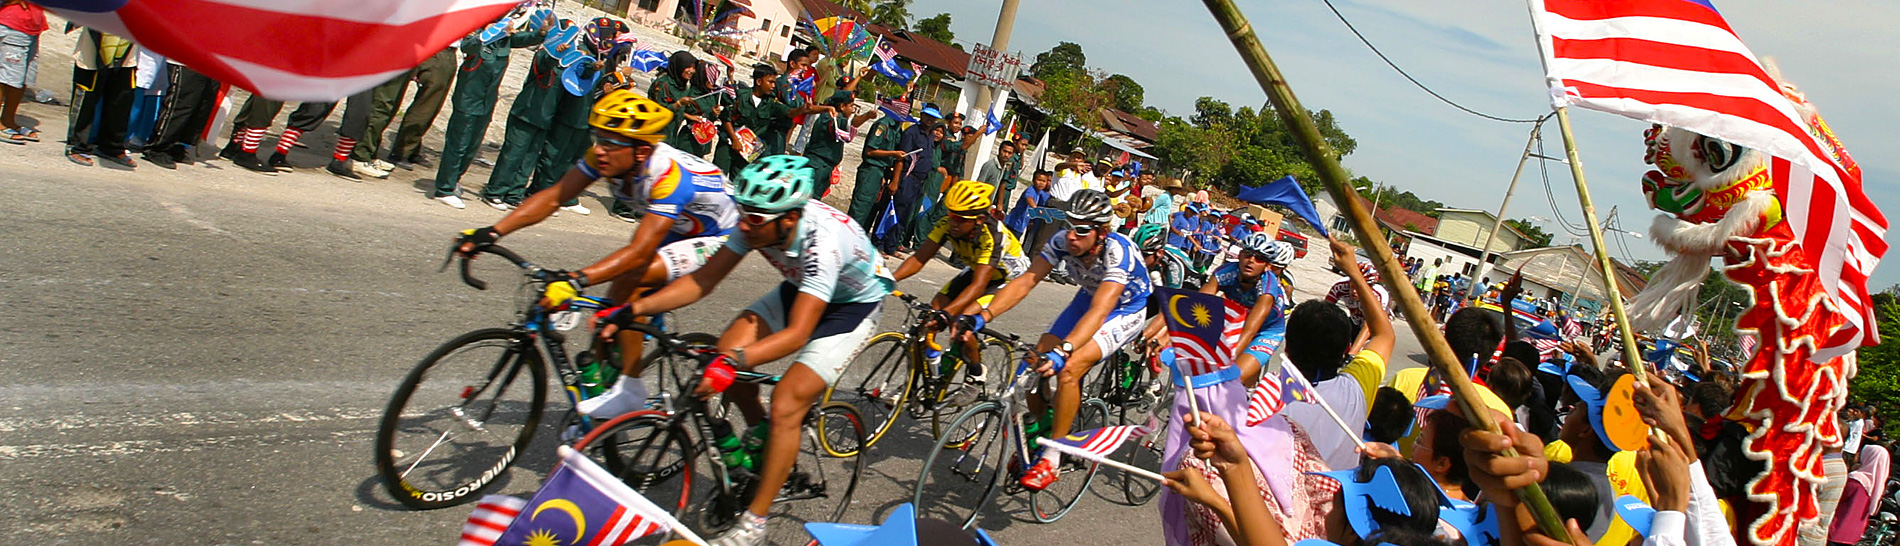 Le Tour de Langkawi: riders passing through village